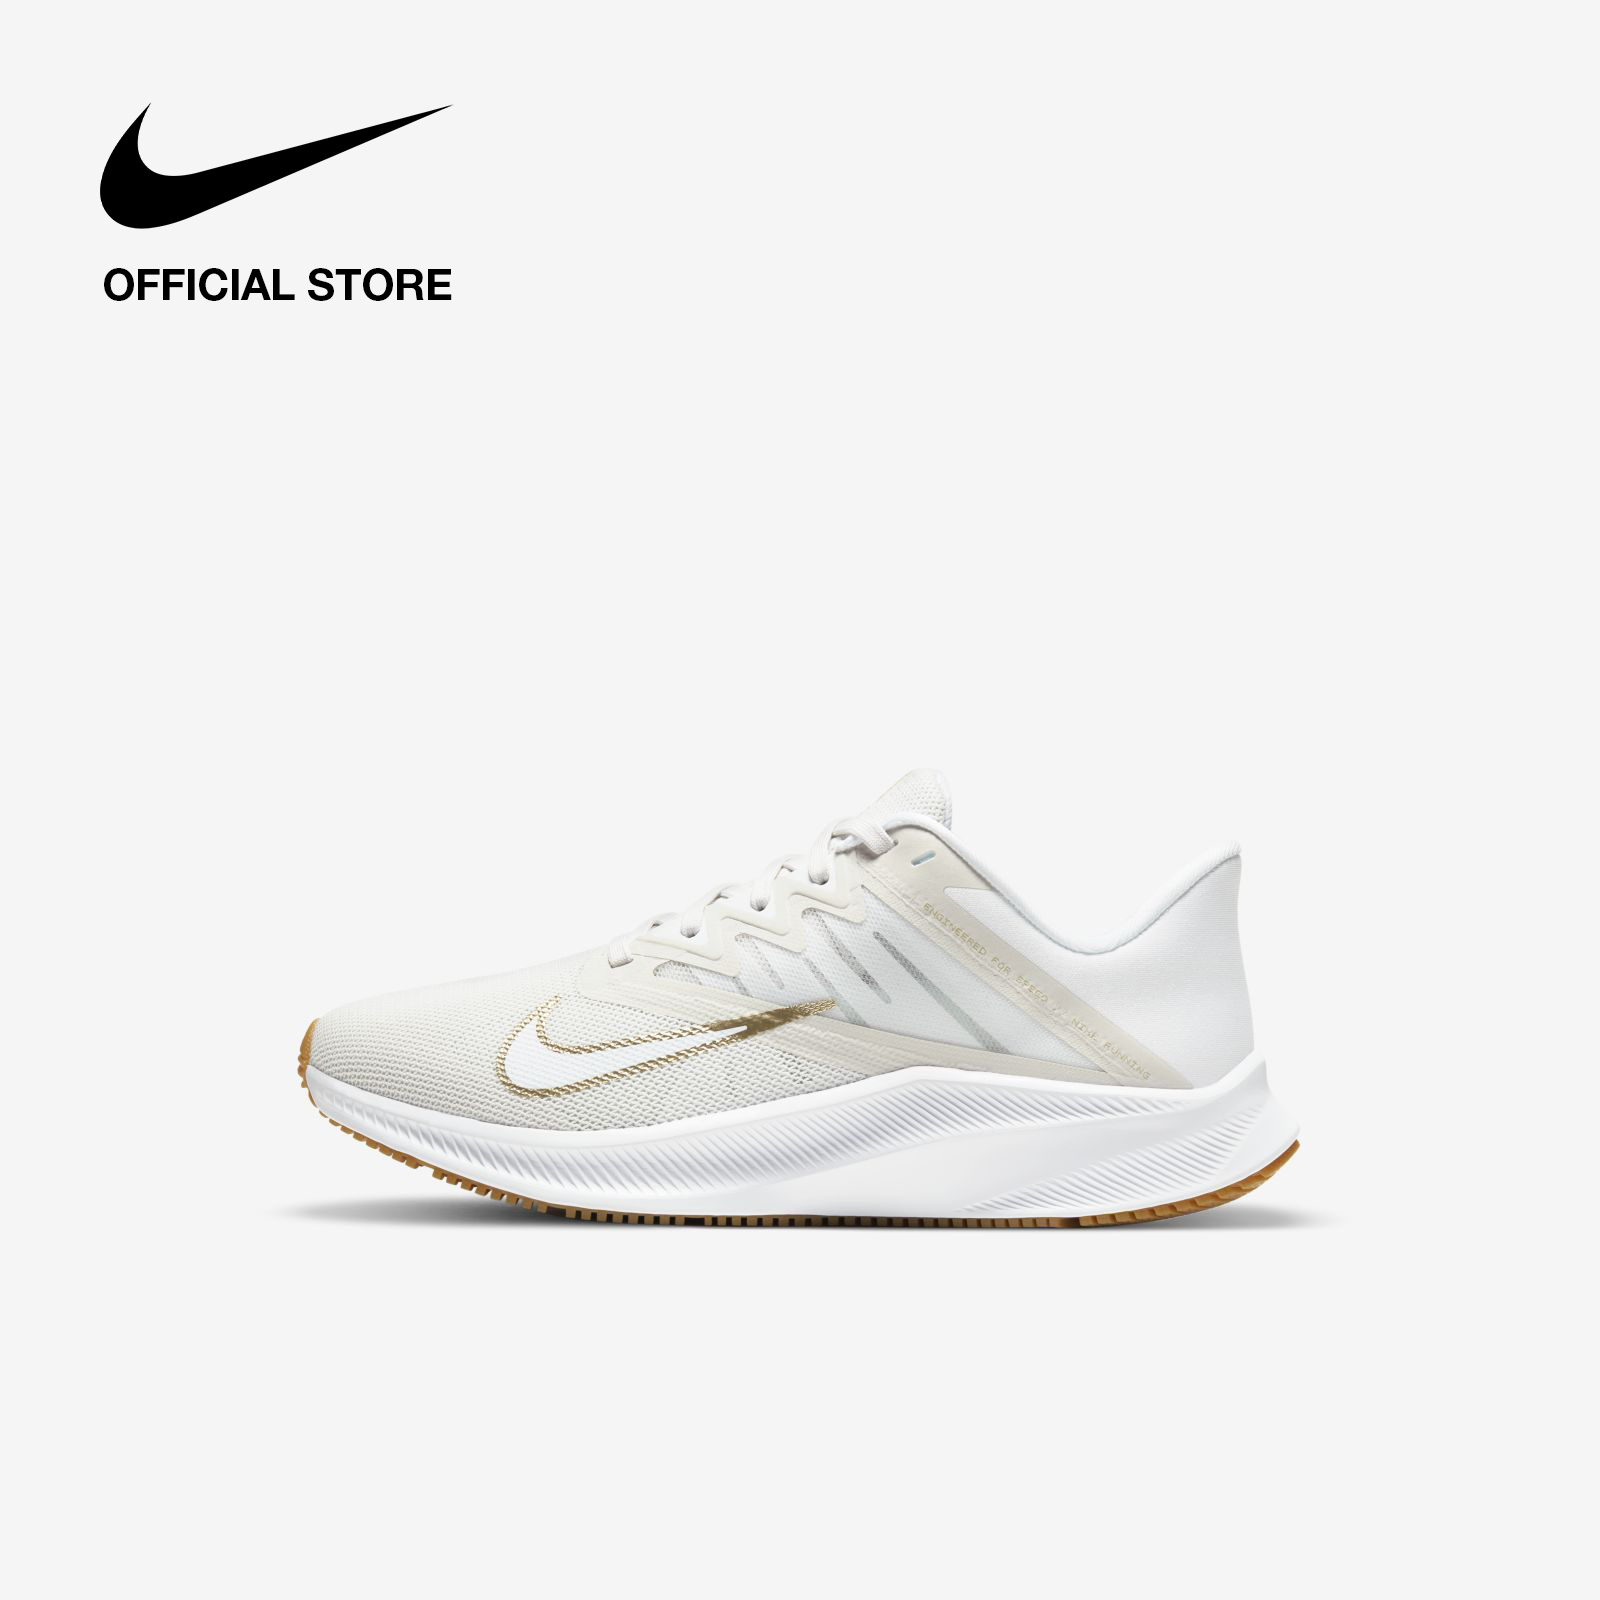 Nike Women's Quest 3 Running Shoes - Platinum Tint ไนกี้ รองเท้าวิ่งผู้หญิง เควสท์ 3 - สีขาว